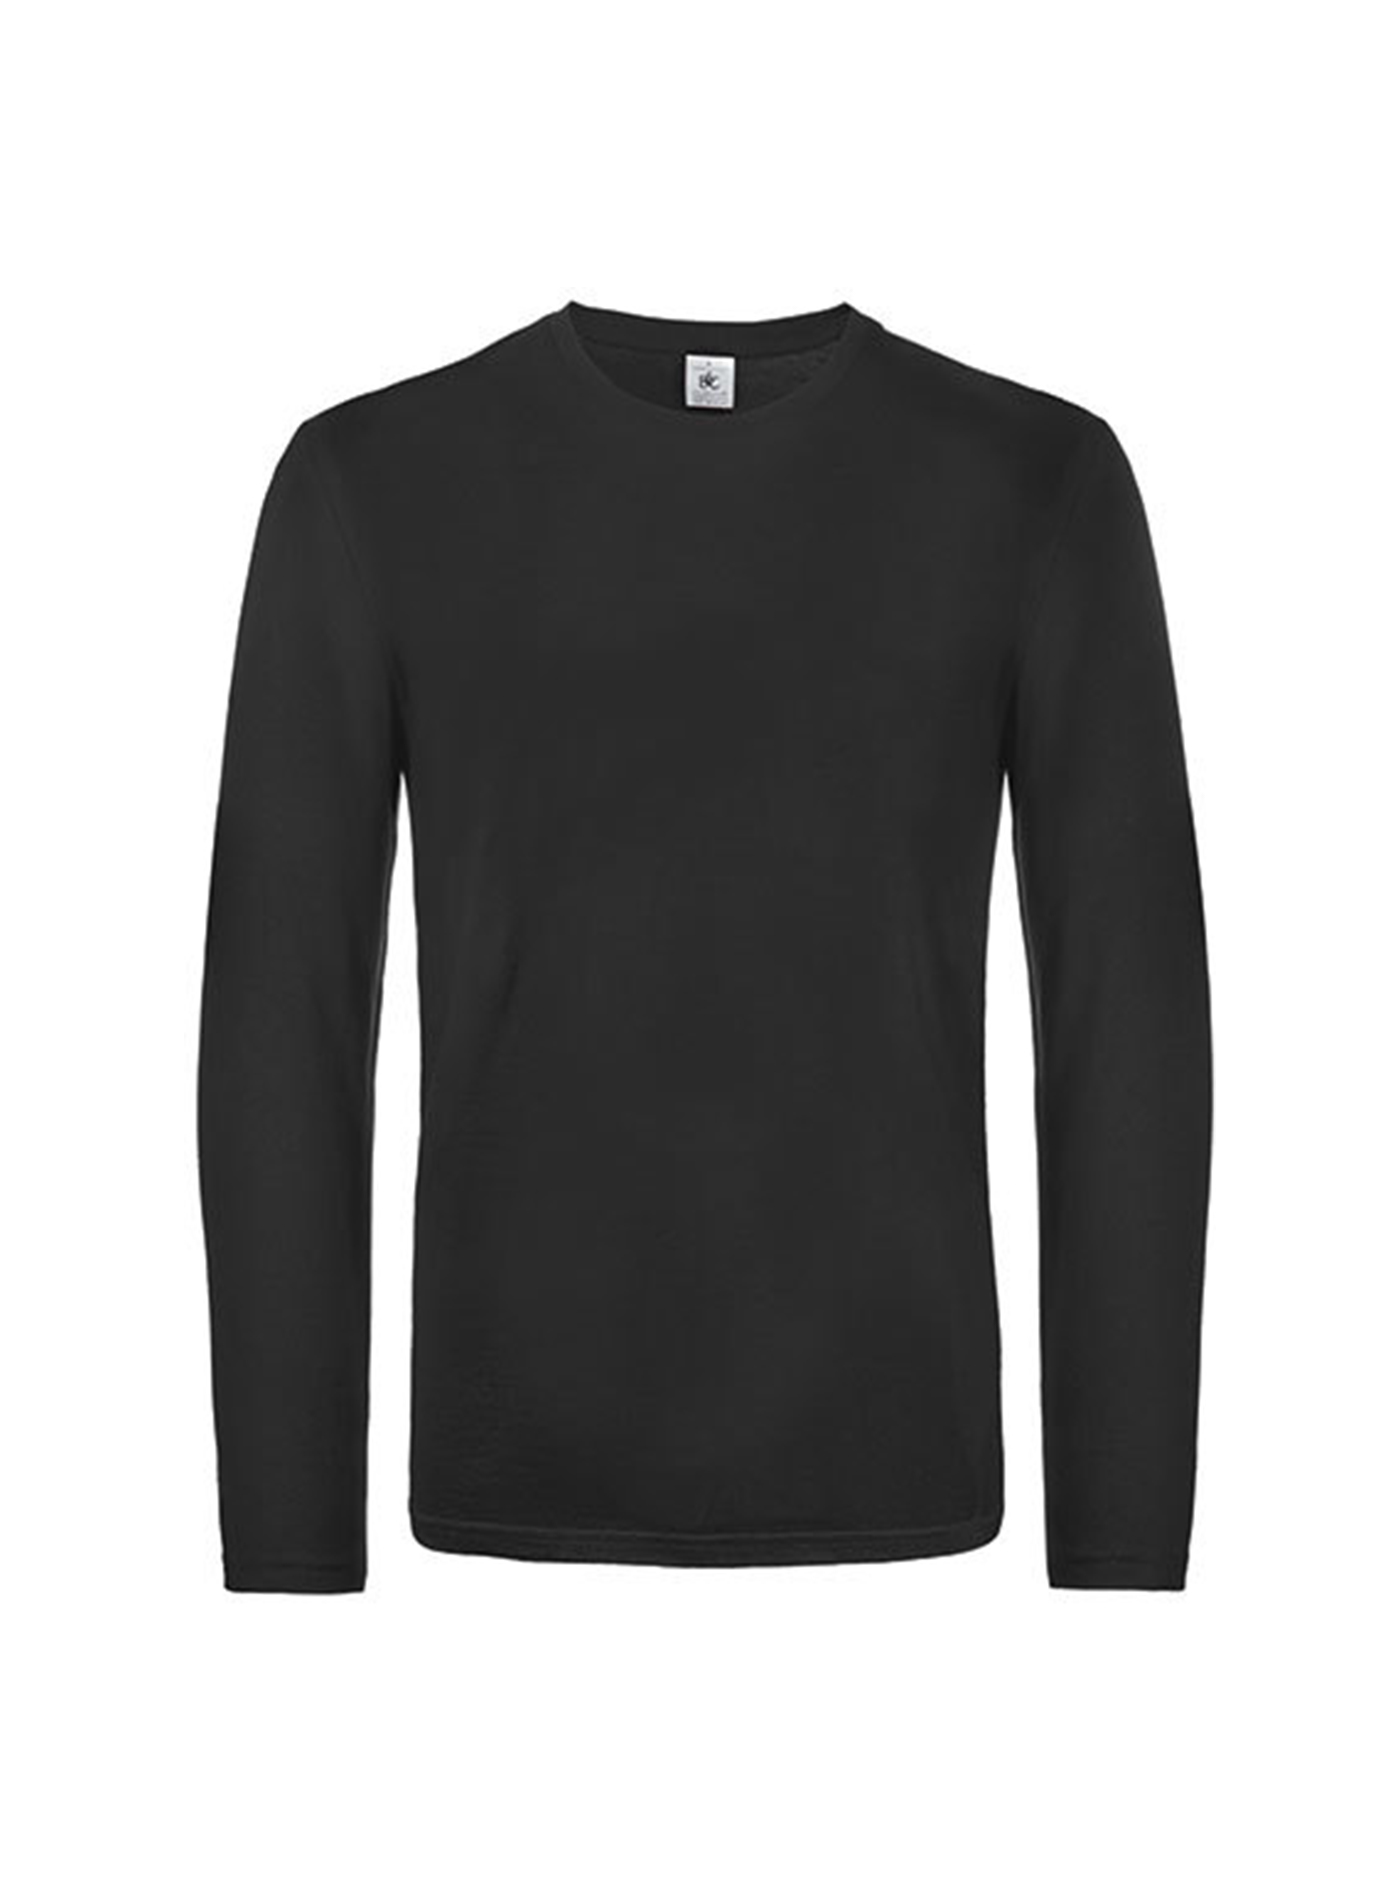 Pánské tričko s dlouhým rukávem B&C Collection - Černá XL